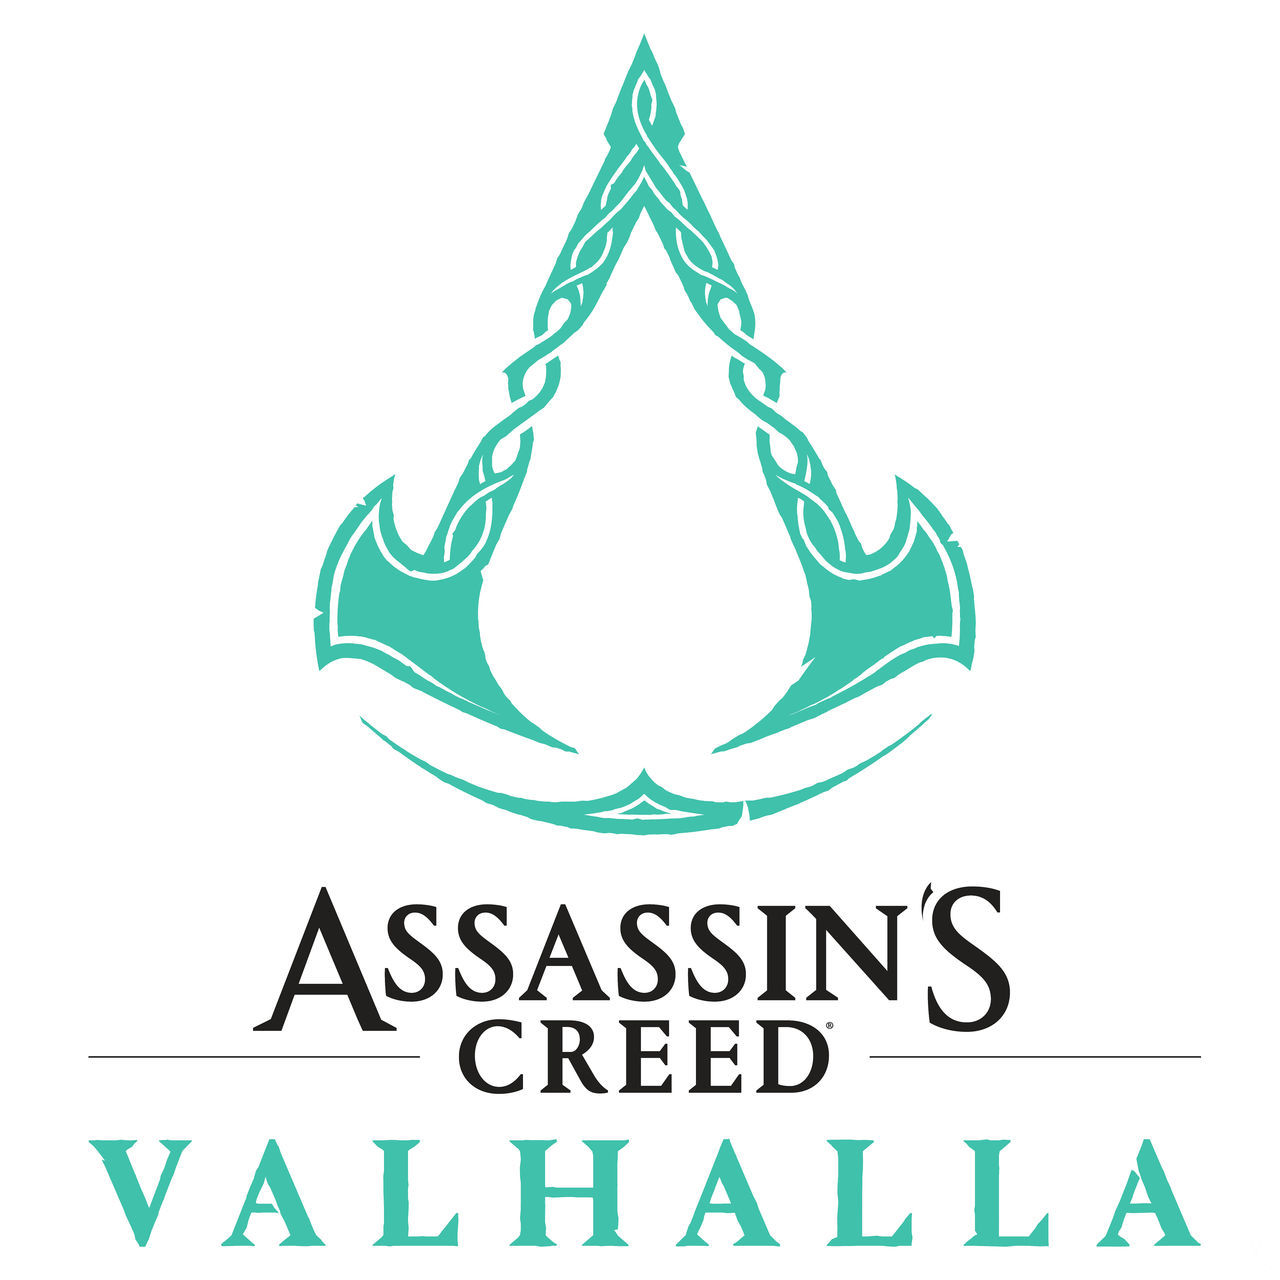 Assassin's Creed Vallhala protagonizado por los vikingos mostrará mañana su primer tráiler